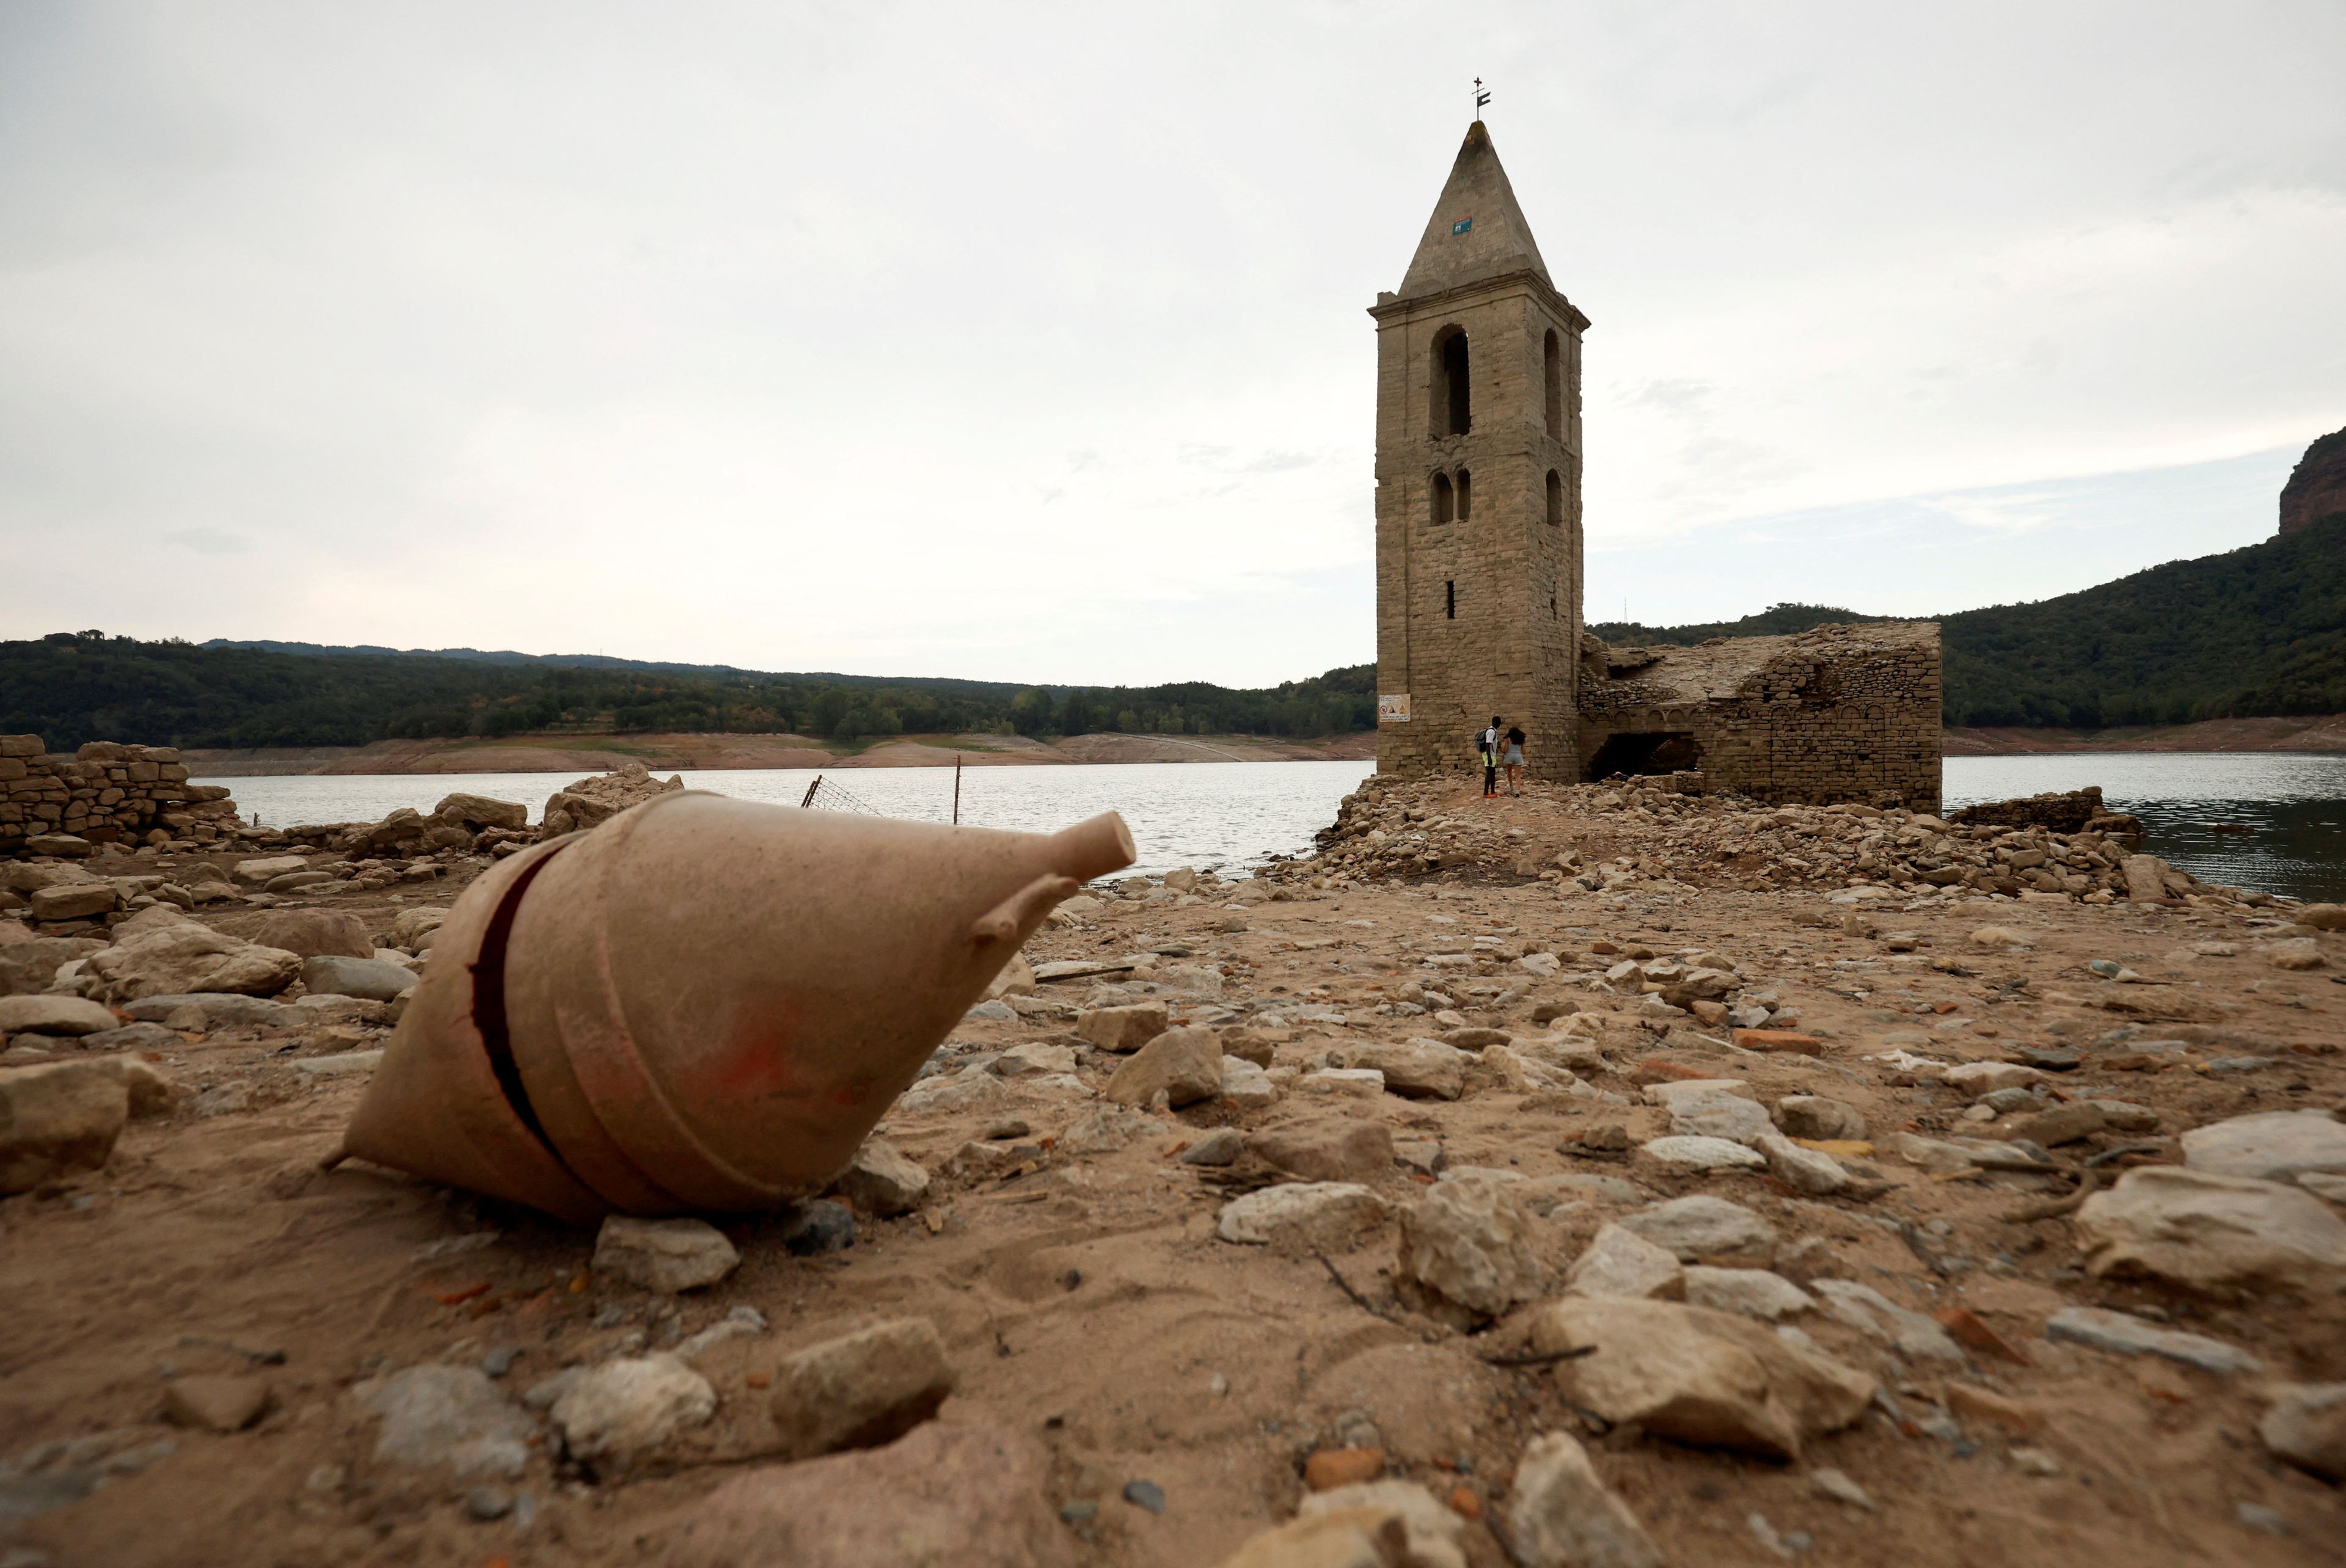 Normalmente, solo puede apreciarse el campanario, pero este verano de 2022 la sequía ha dejado a la luz la iglesia de Sant Roma de Sau, al norte de Barcelona.